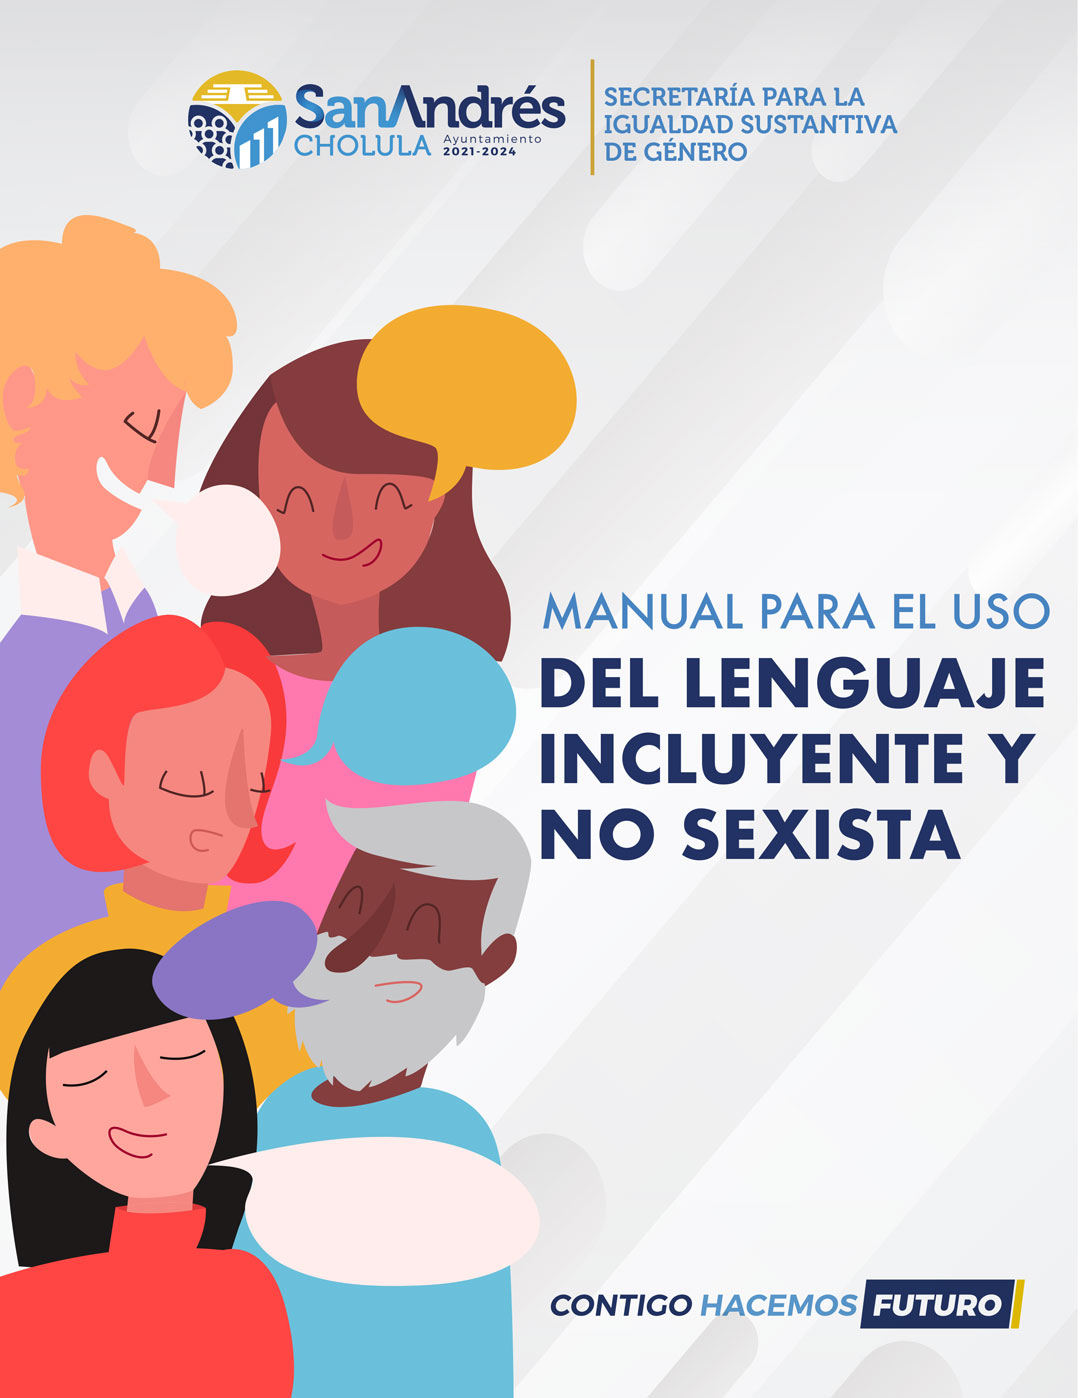 Manual Para El Uso Del Lenguaje Incluyente Y No Sexista Portal De Gobierno San Andrés Cholula 0610